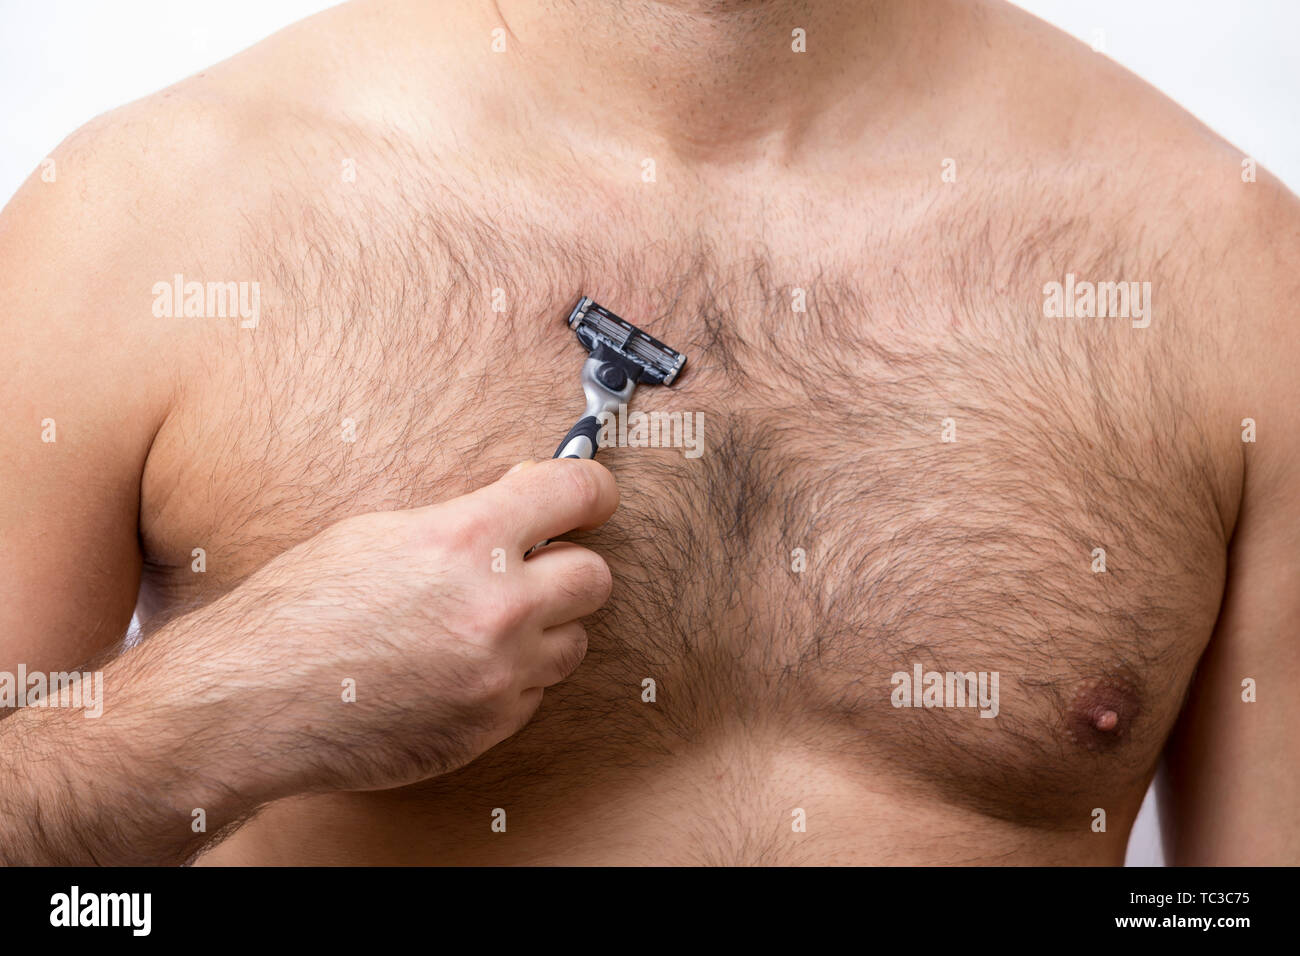 Brustbehaarung Stockfotos Und Bilder Kaufen Alamy